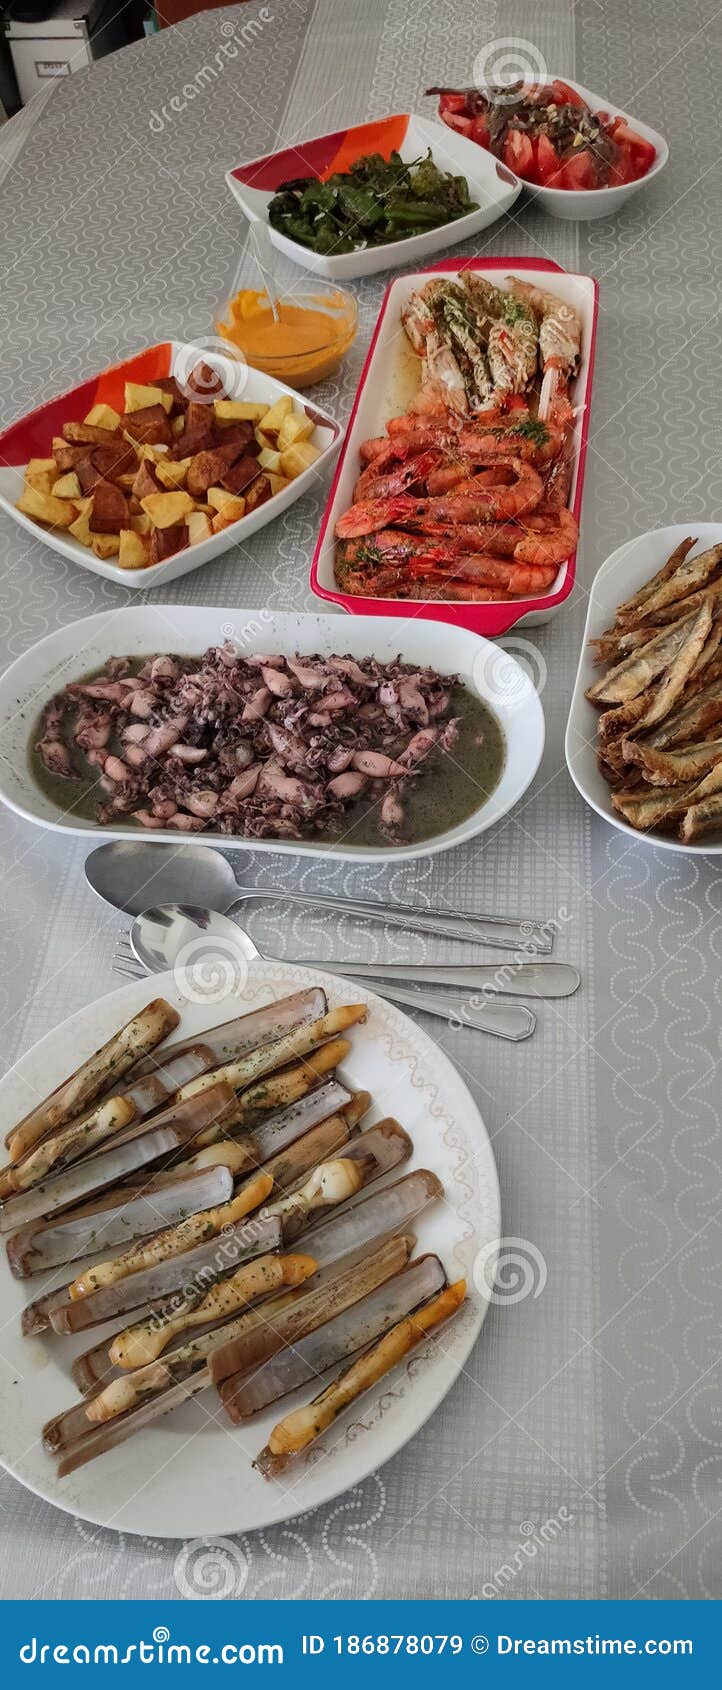 seafood lunch table eat food comida marisco